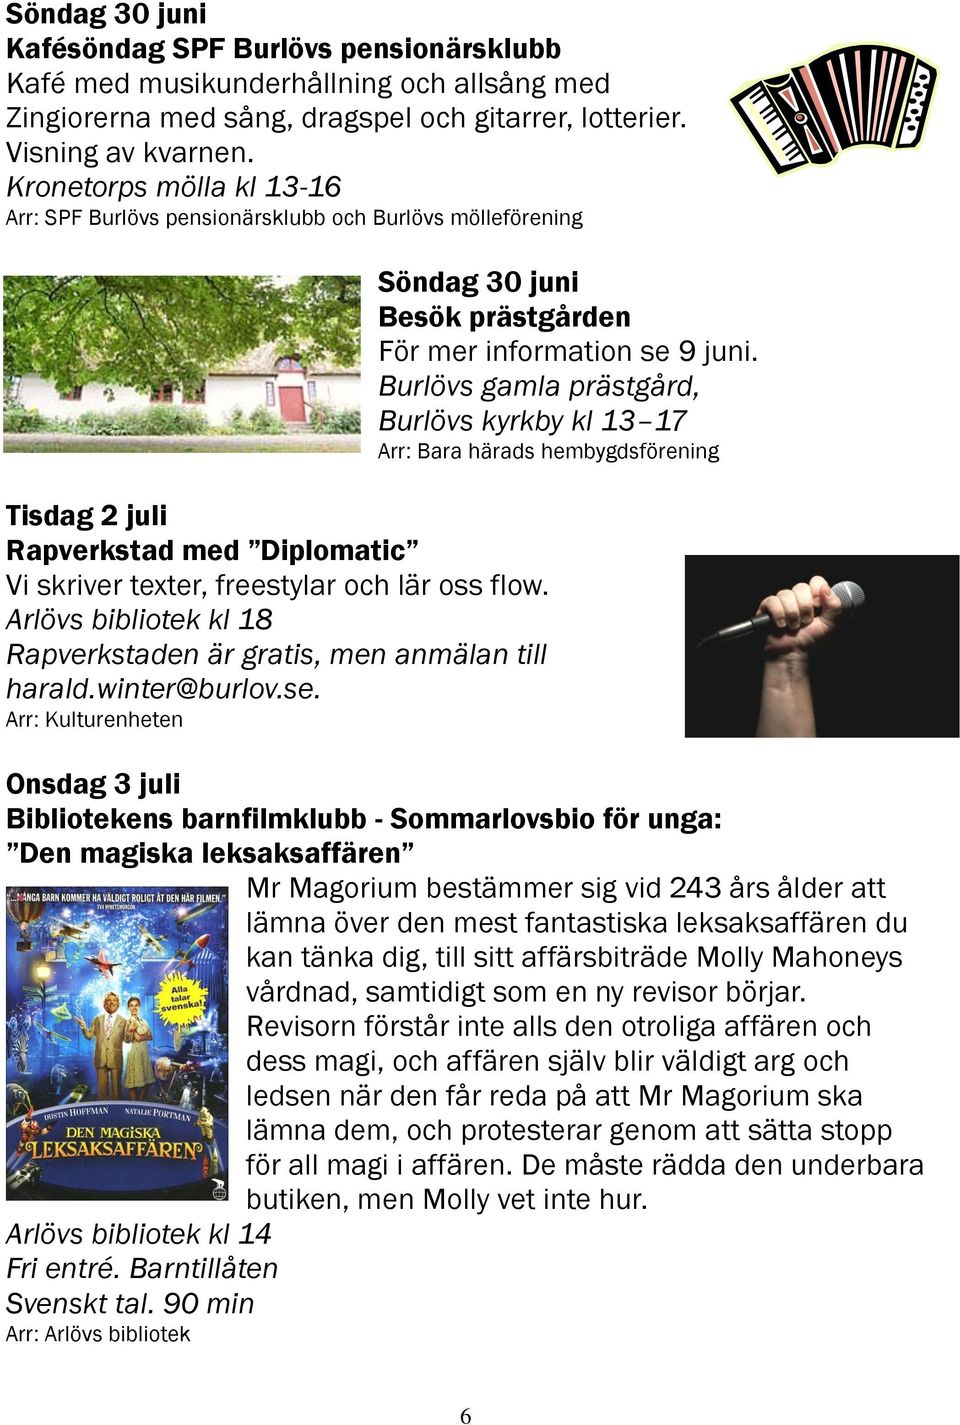 Arlövs bibliotek kl 18 Rapverkstaden är gratis, men anmälan till harald.winter@burlov.se.